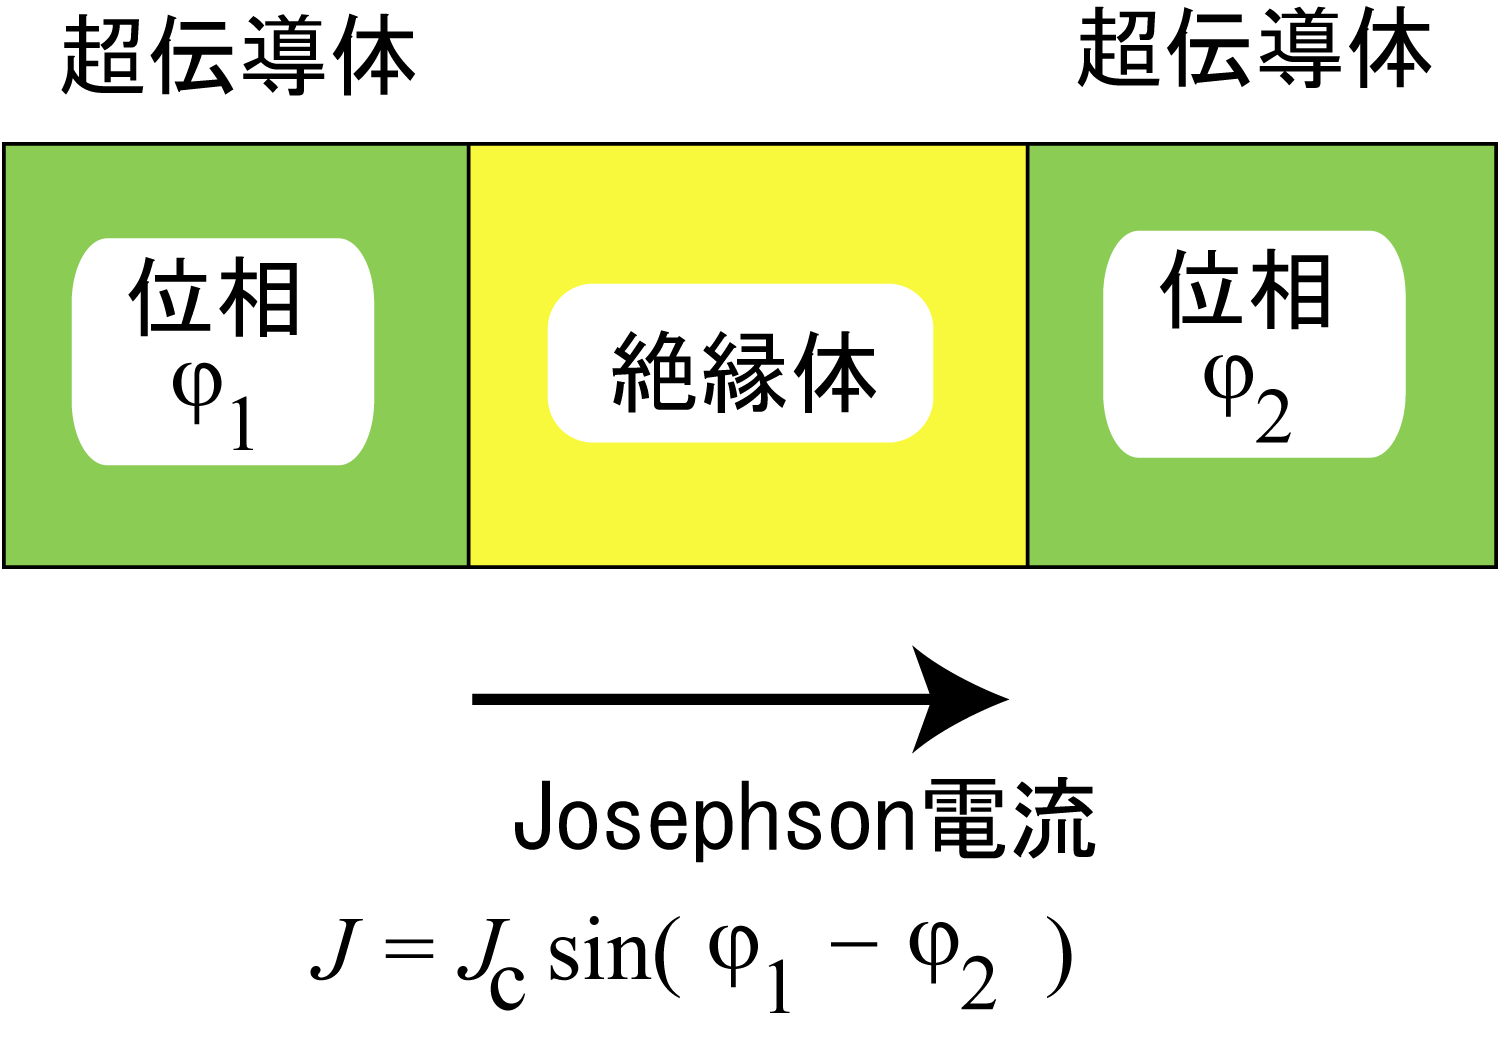 Josephson junction